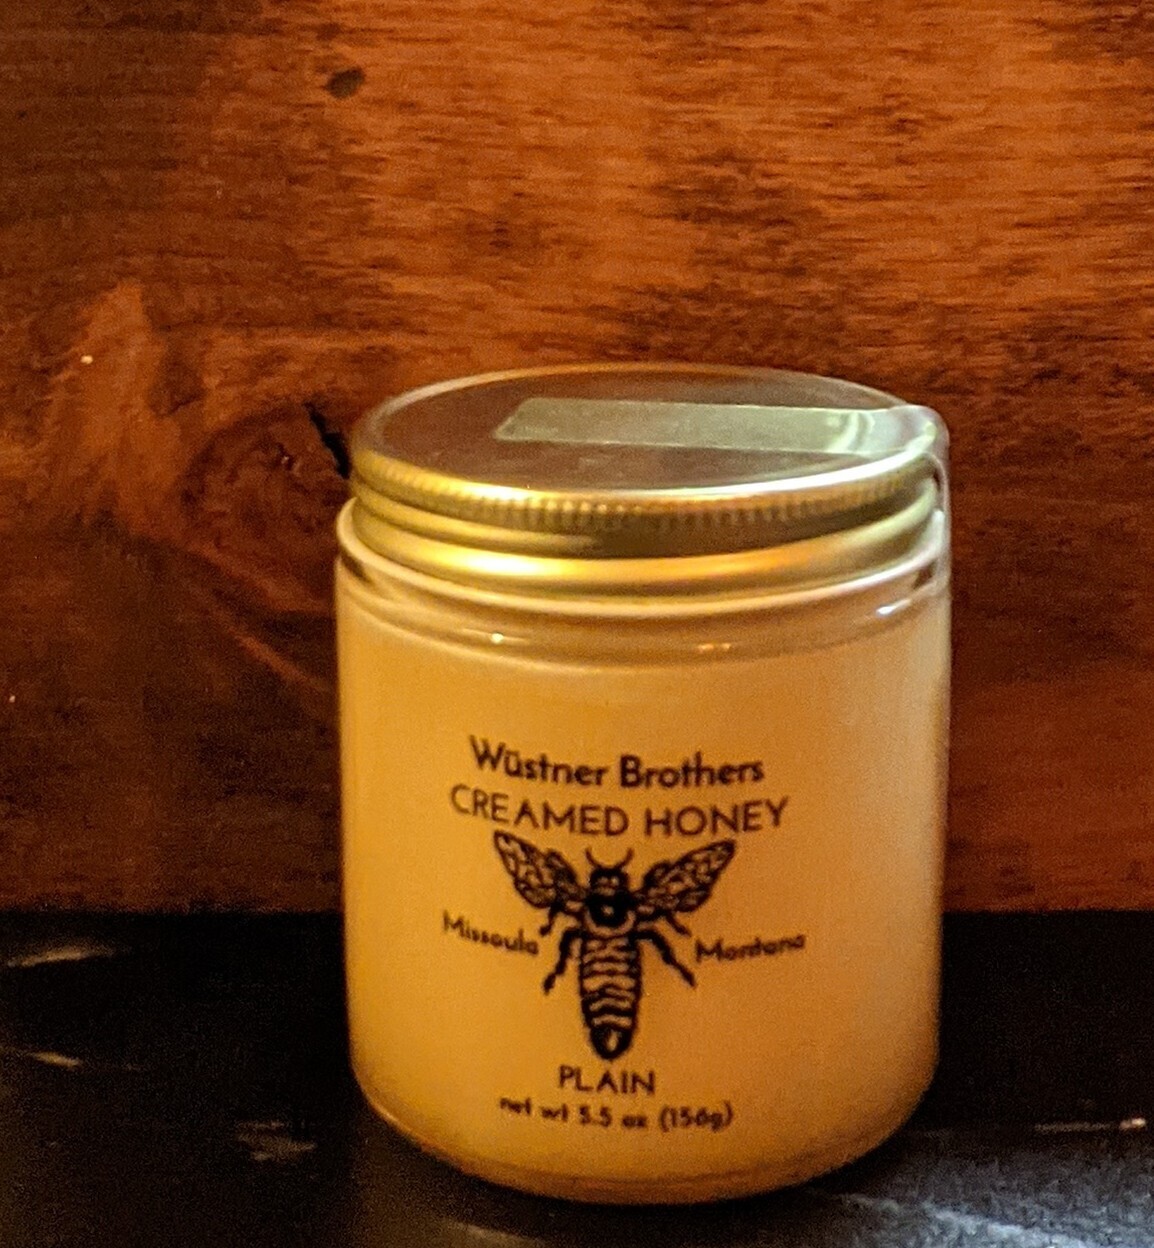 Wustner Creamed Honey 5.5 oz - Plain